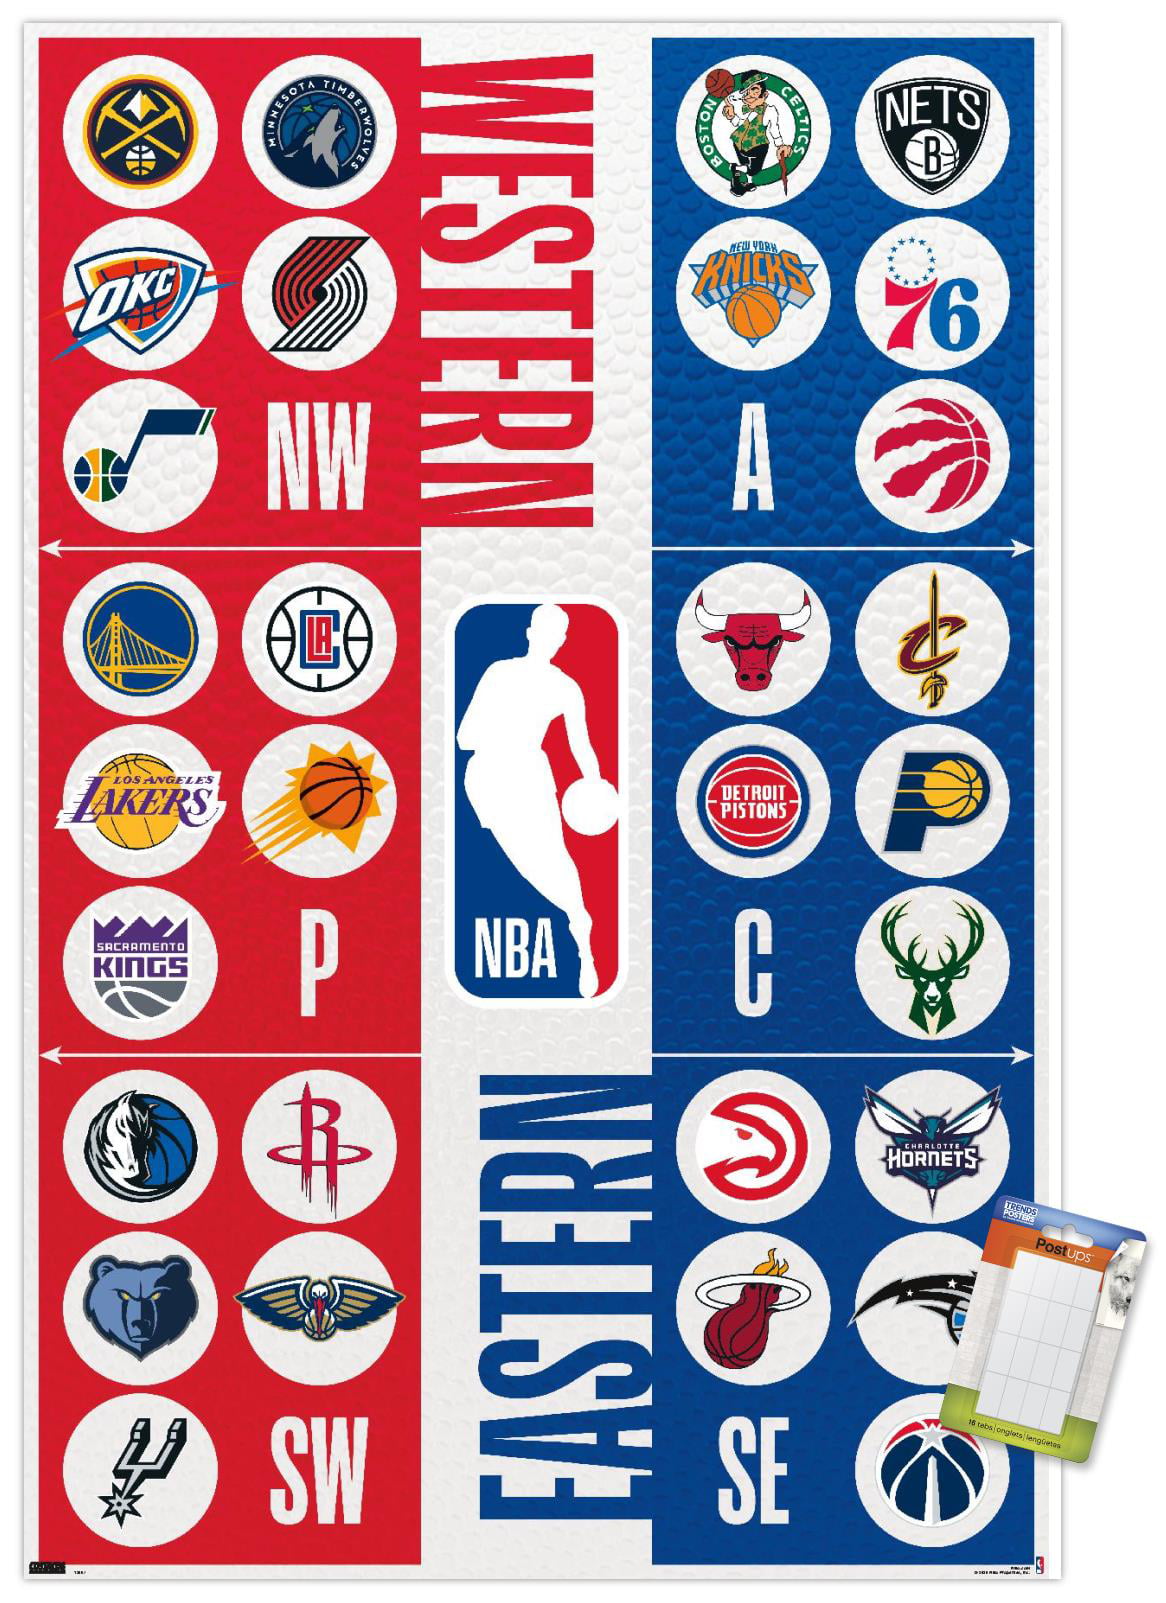 Corporate logos to adorn NBA jerseys